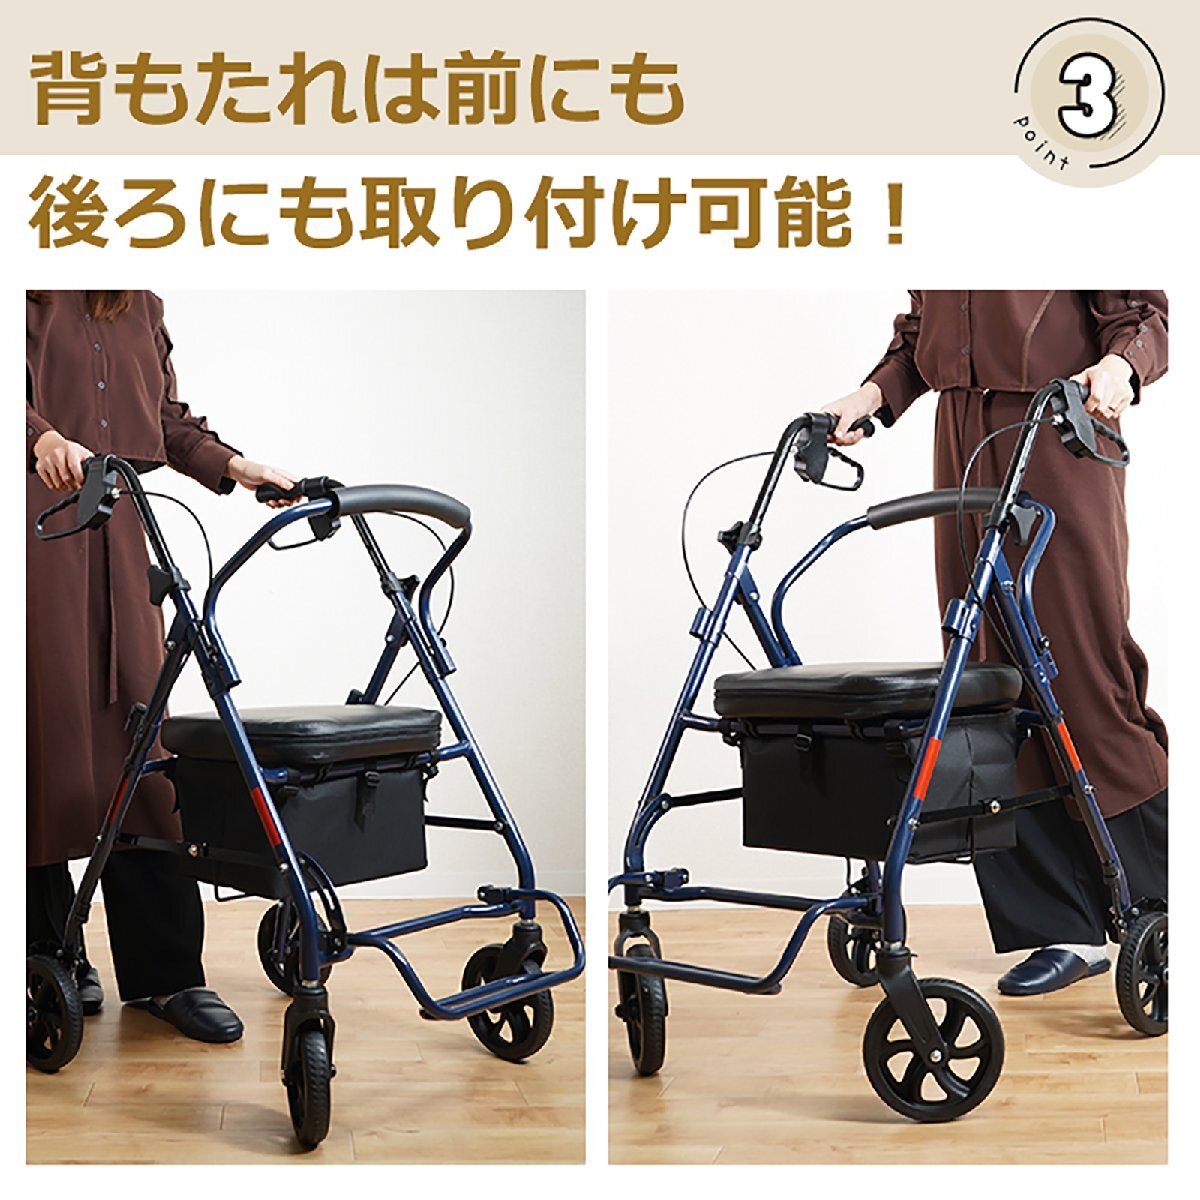 1 иен коляска для пожилых модный compact сиденье .. инструмент для оказания помощи ручная тележка складной покупка машина коляска для пожилых to senior car to приспособление для ходьбы ny595